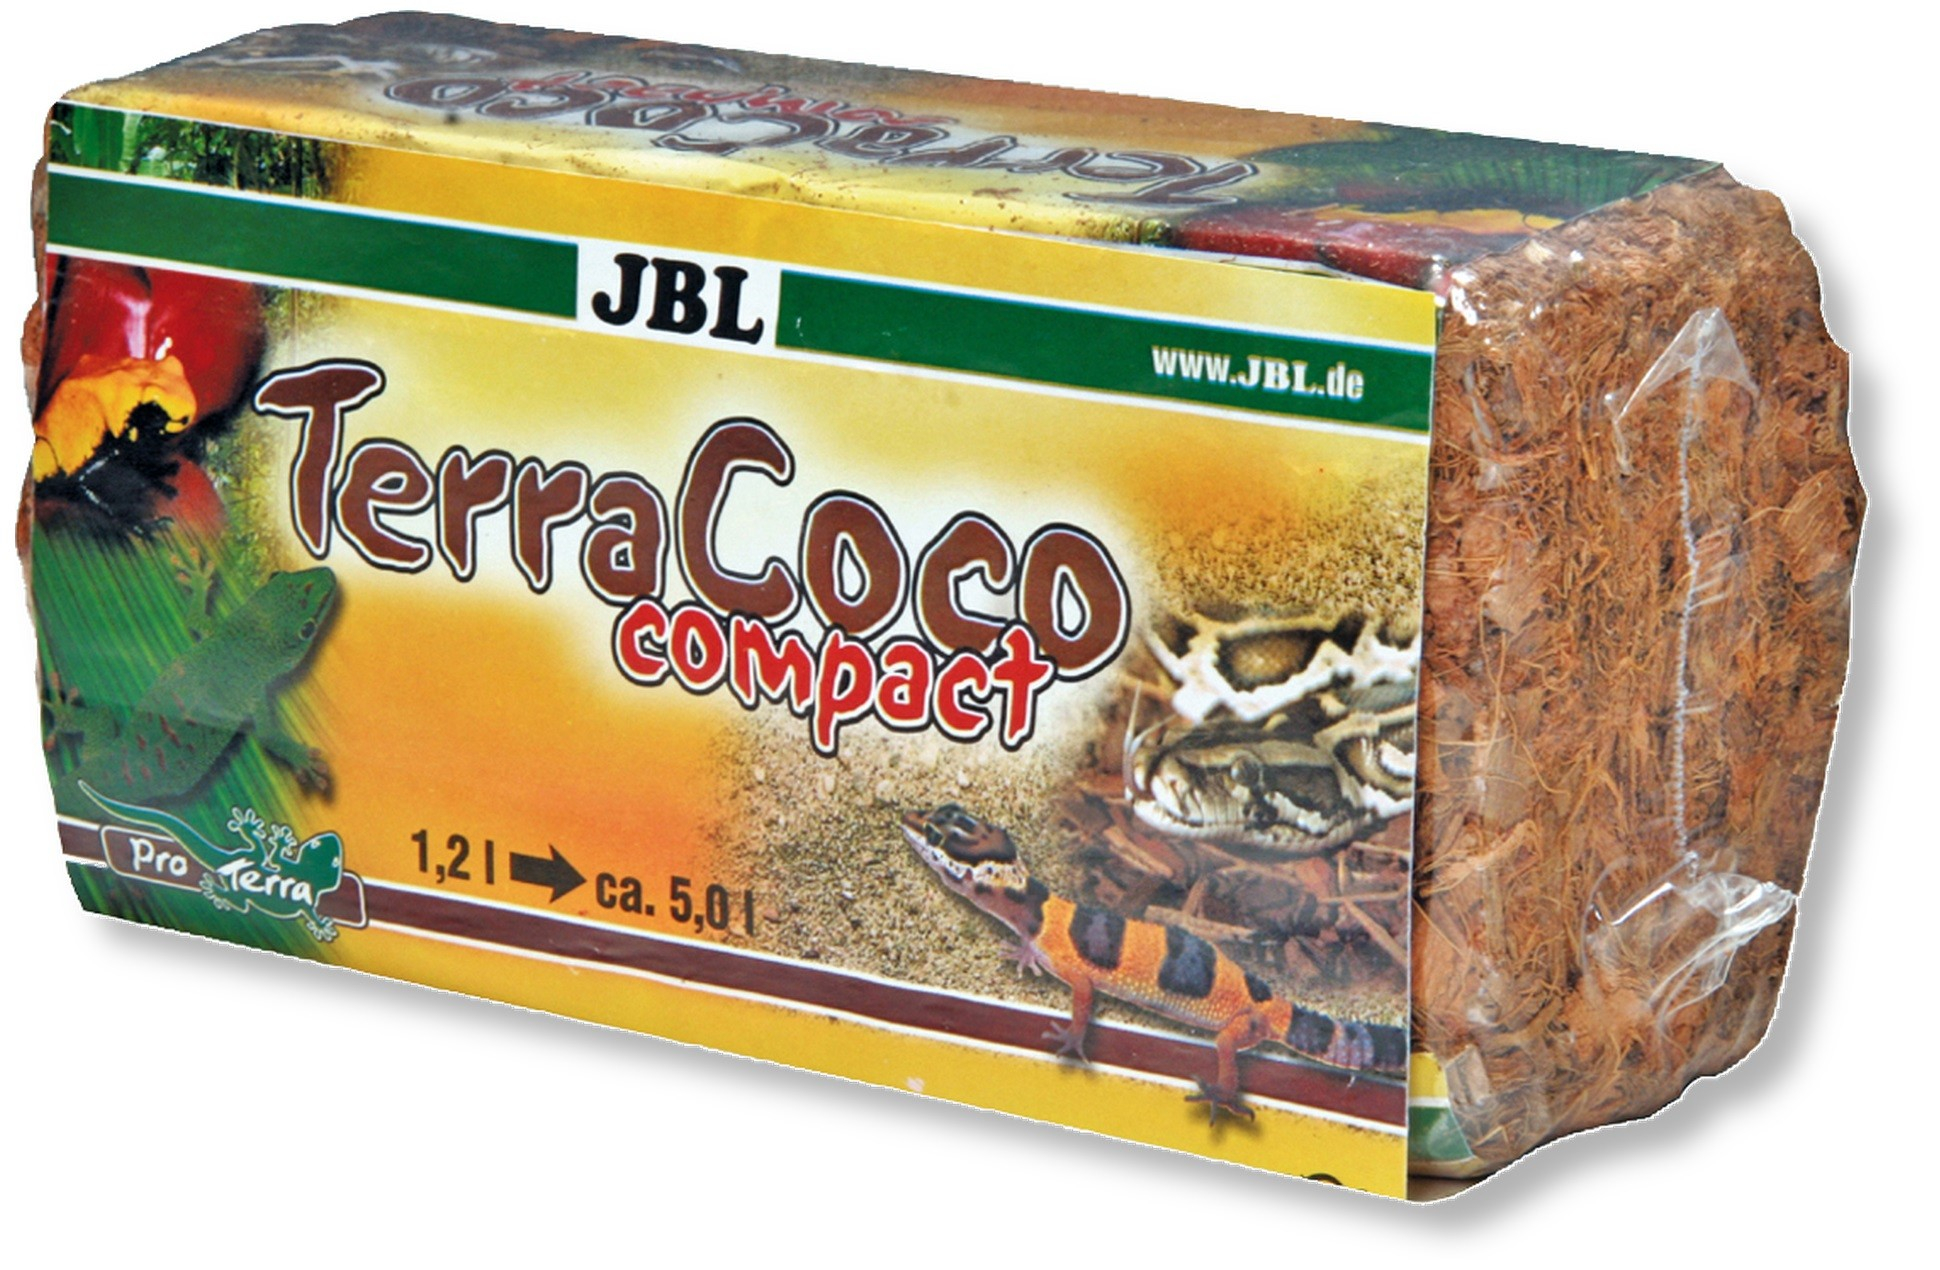 Substrato natural compacto de raspas de coco JBL TerraCoco Compact